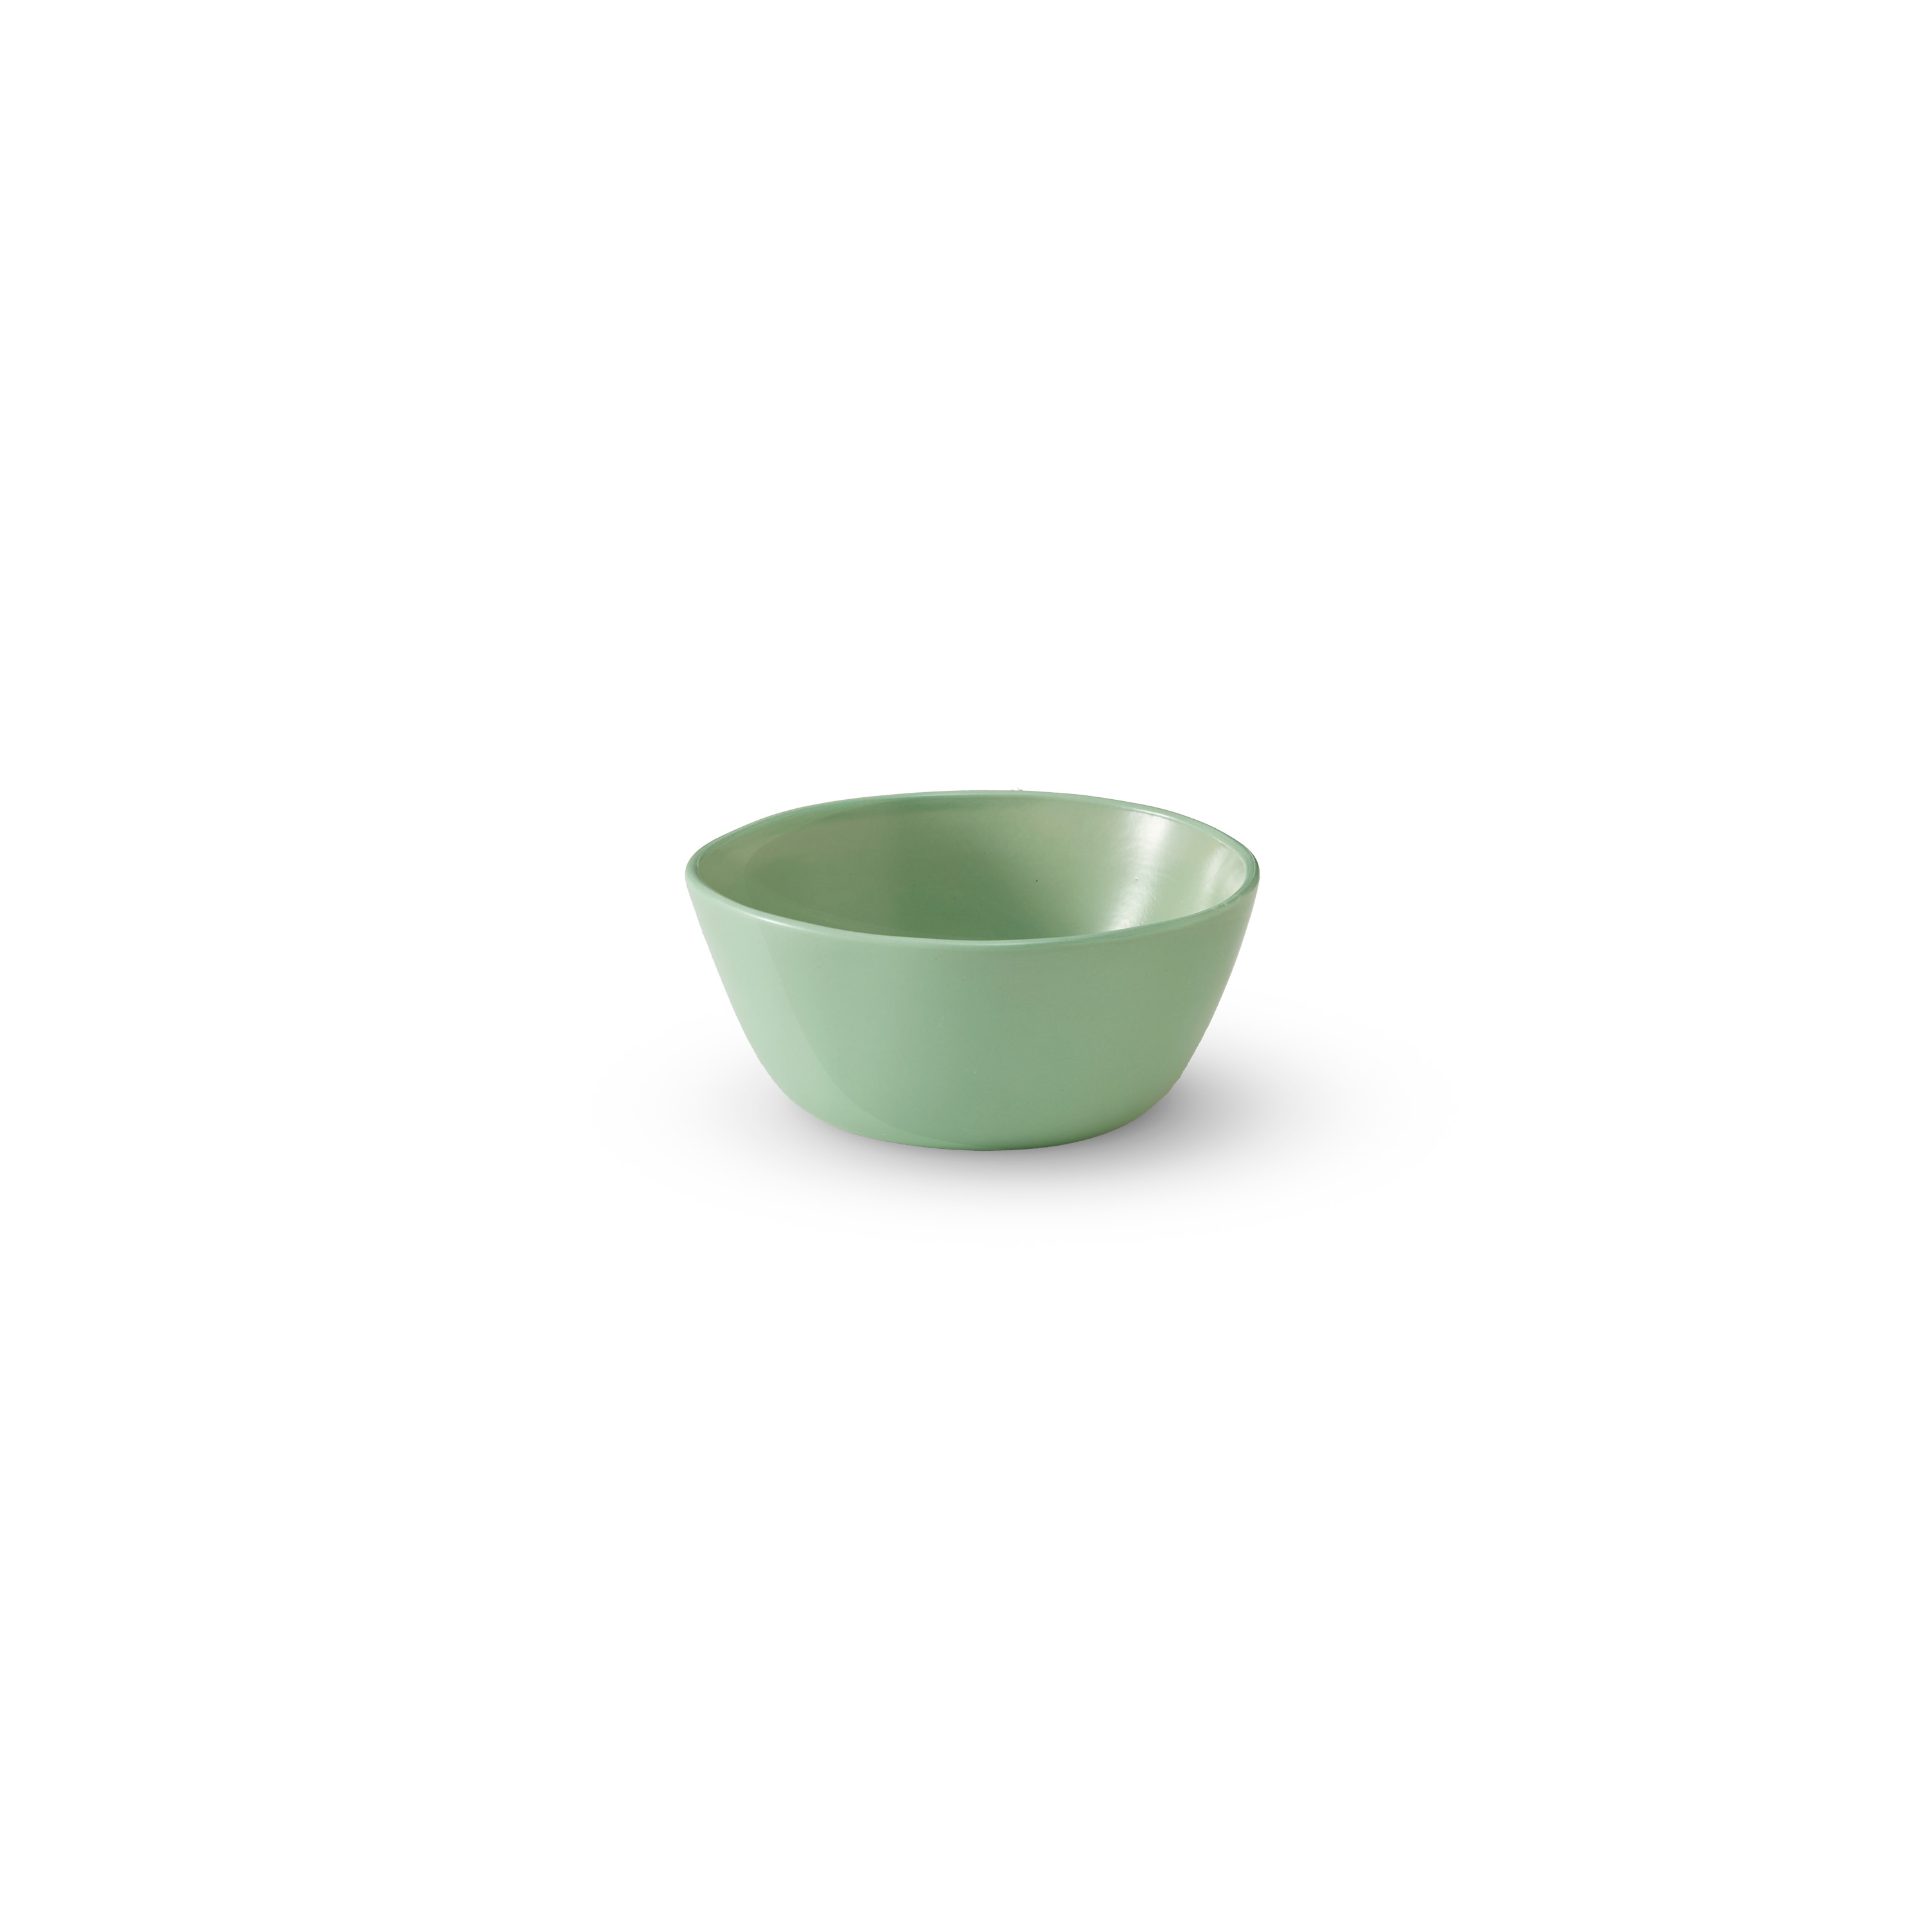 Tonkin Rice Bowl: Celadon